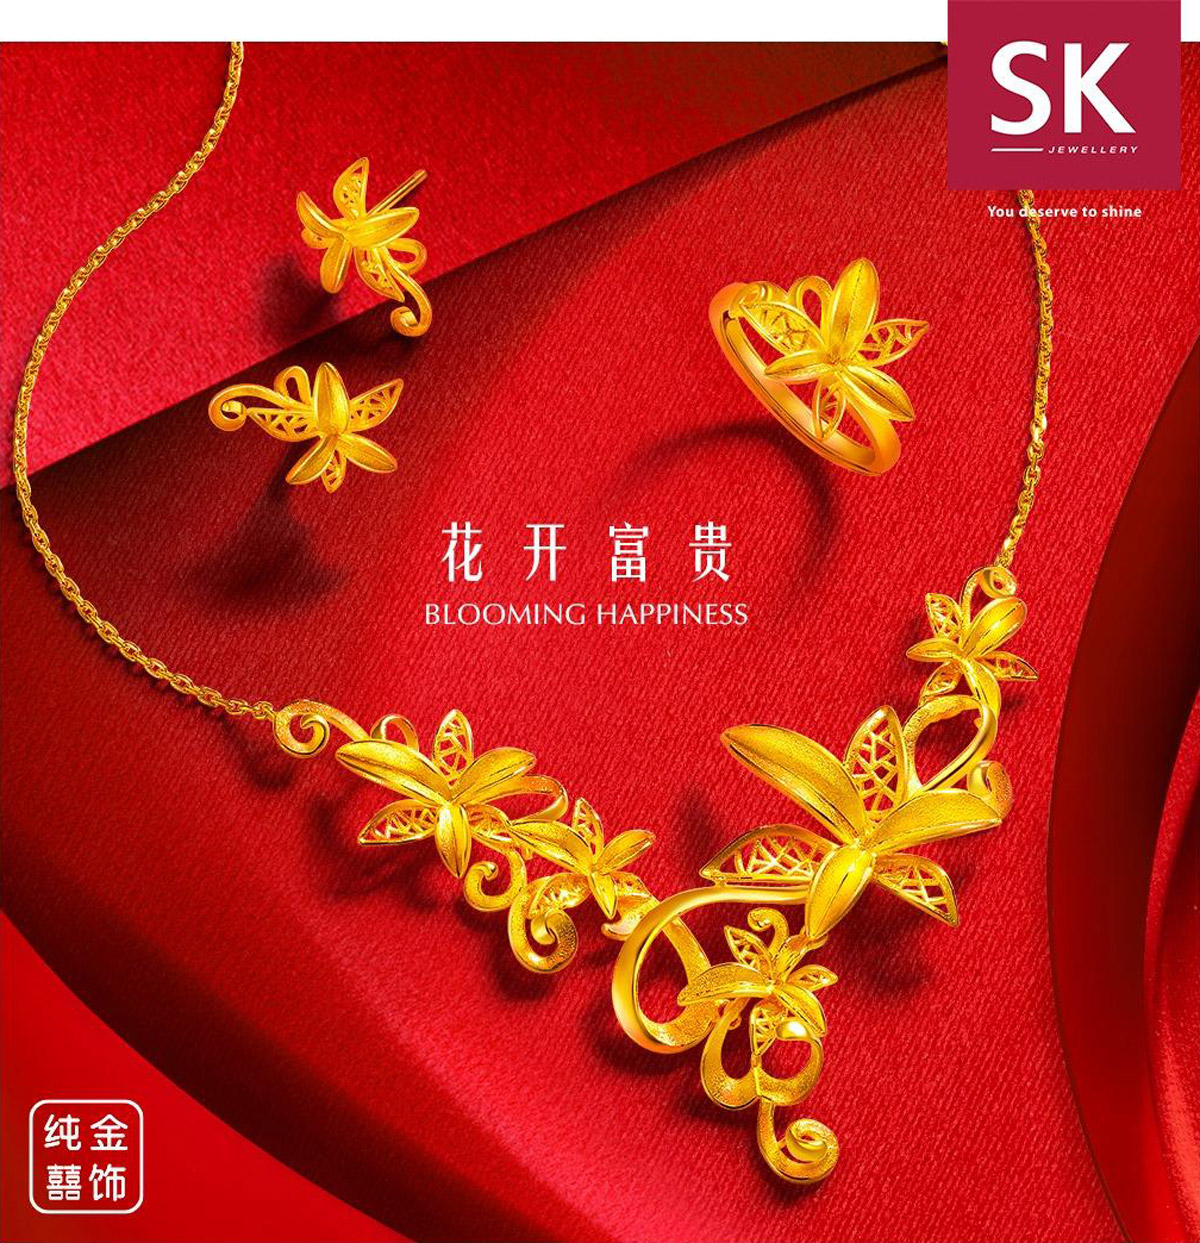 sk-jewellery-si-dian-jin-singapore